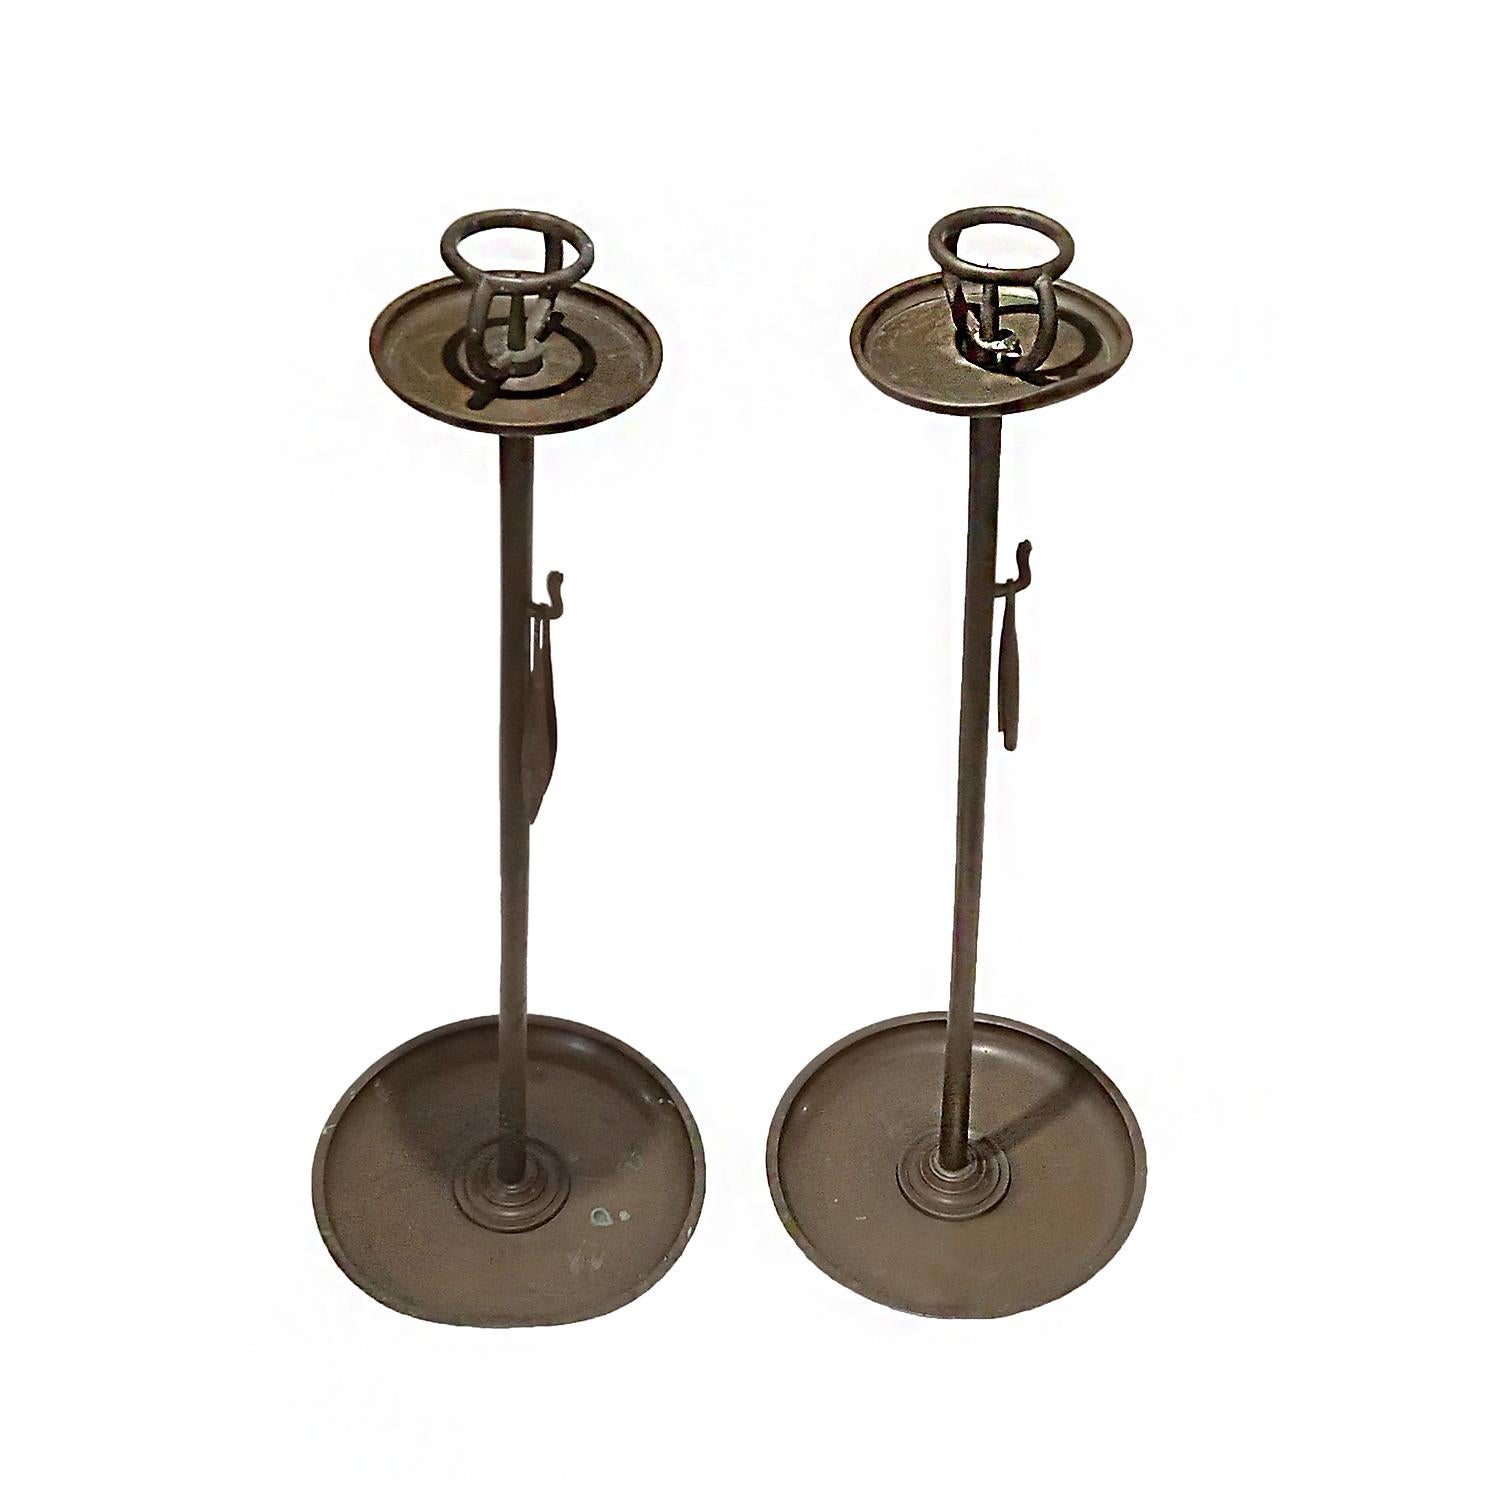 Zwei hohe Kerzenständer, handgefertigt aus Bronze, um 1880. Japan, Meiji-Periode. 

Die Basis misst 10,25 Zoll, die Höhe beträgt 29 Zoll. Die obere Kreisplatte misst 5 Zoll, mit einem Innenring für eine 2-Zoll-Kerze. Beide haben eine von der Zeit